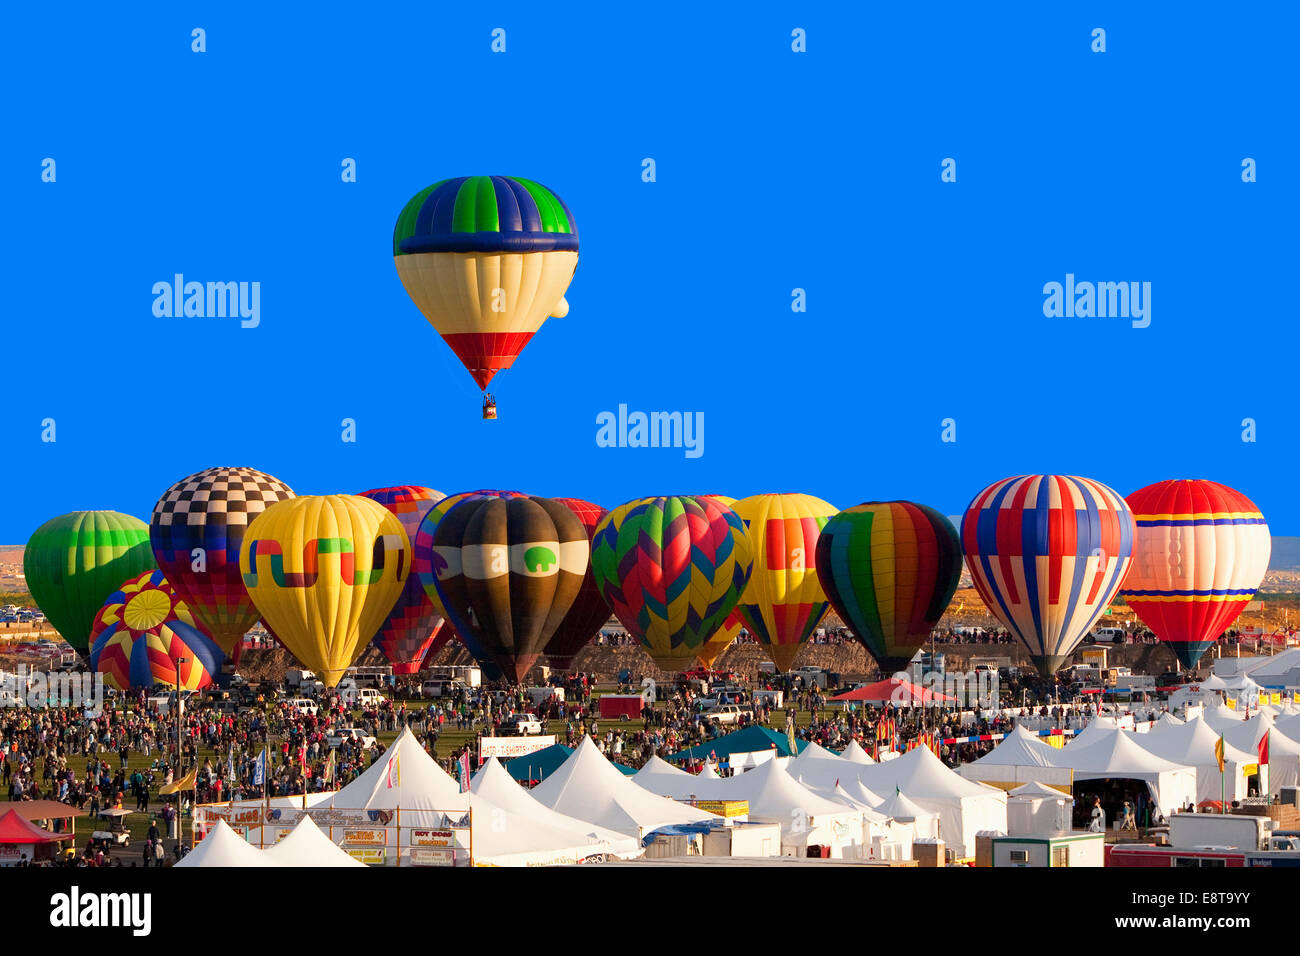 En globo de aire caliente flotando por encima de los demás en el festival, Albuquerque, Nuevo México, Estados Unidos Foto de stock